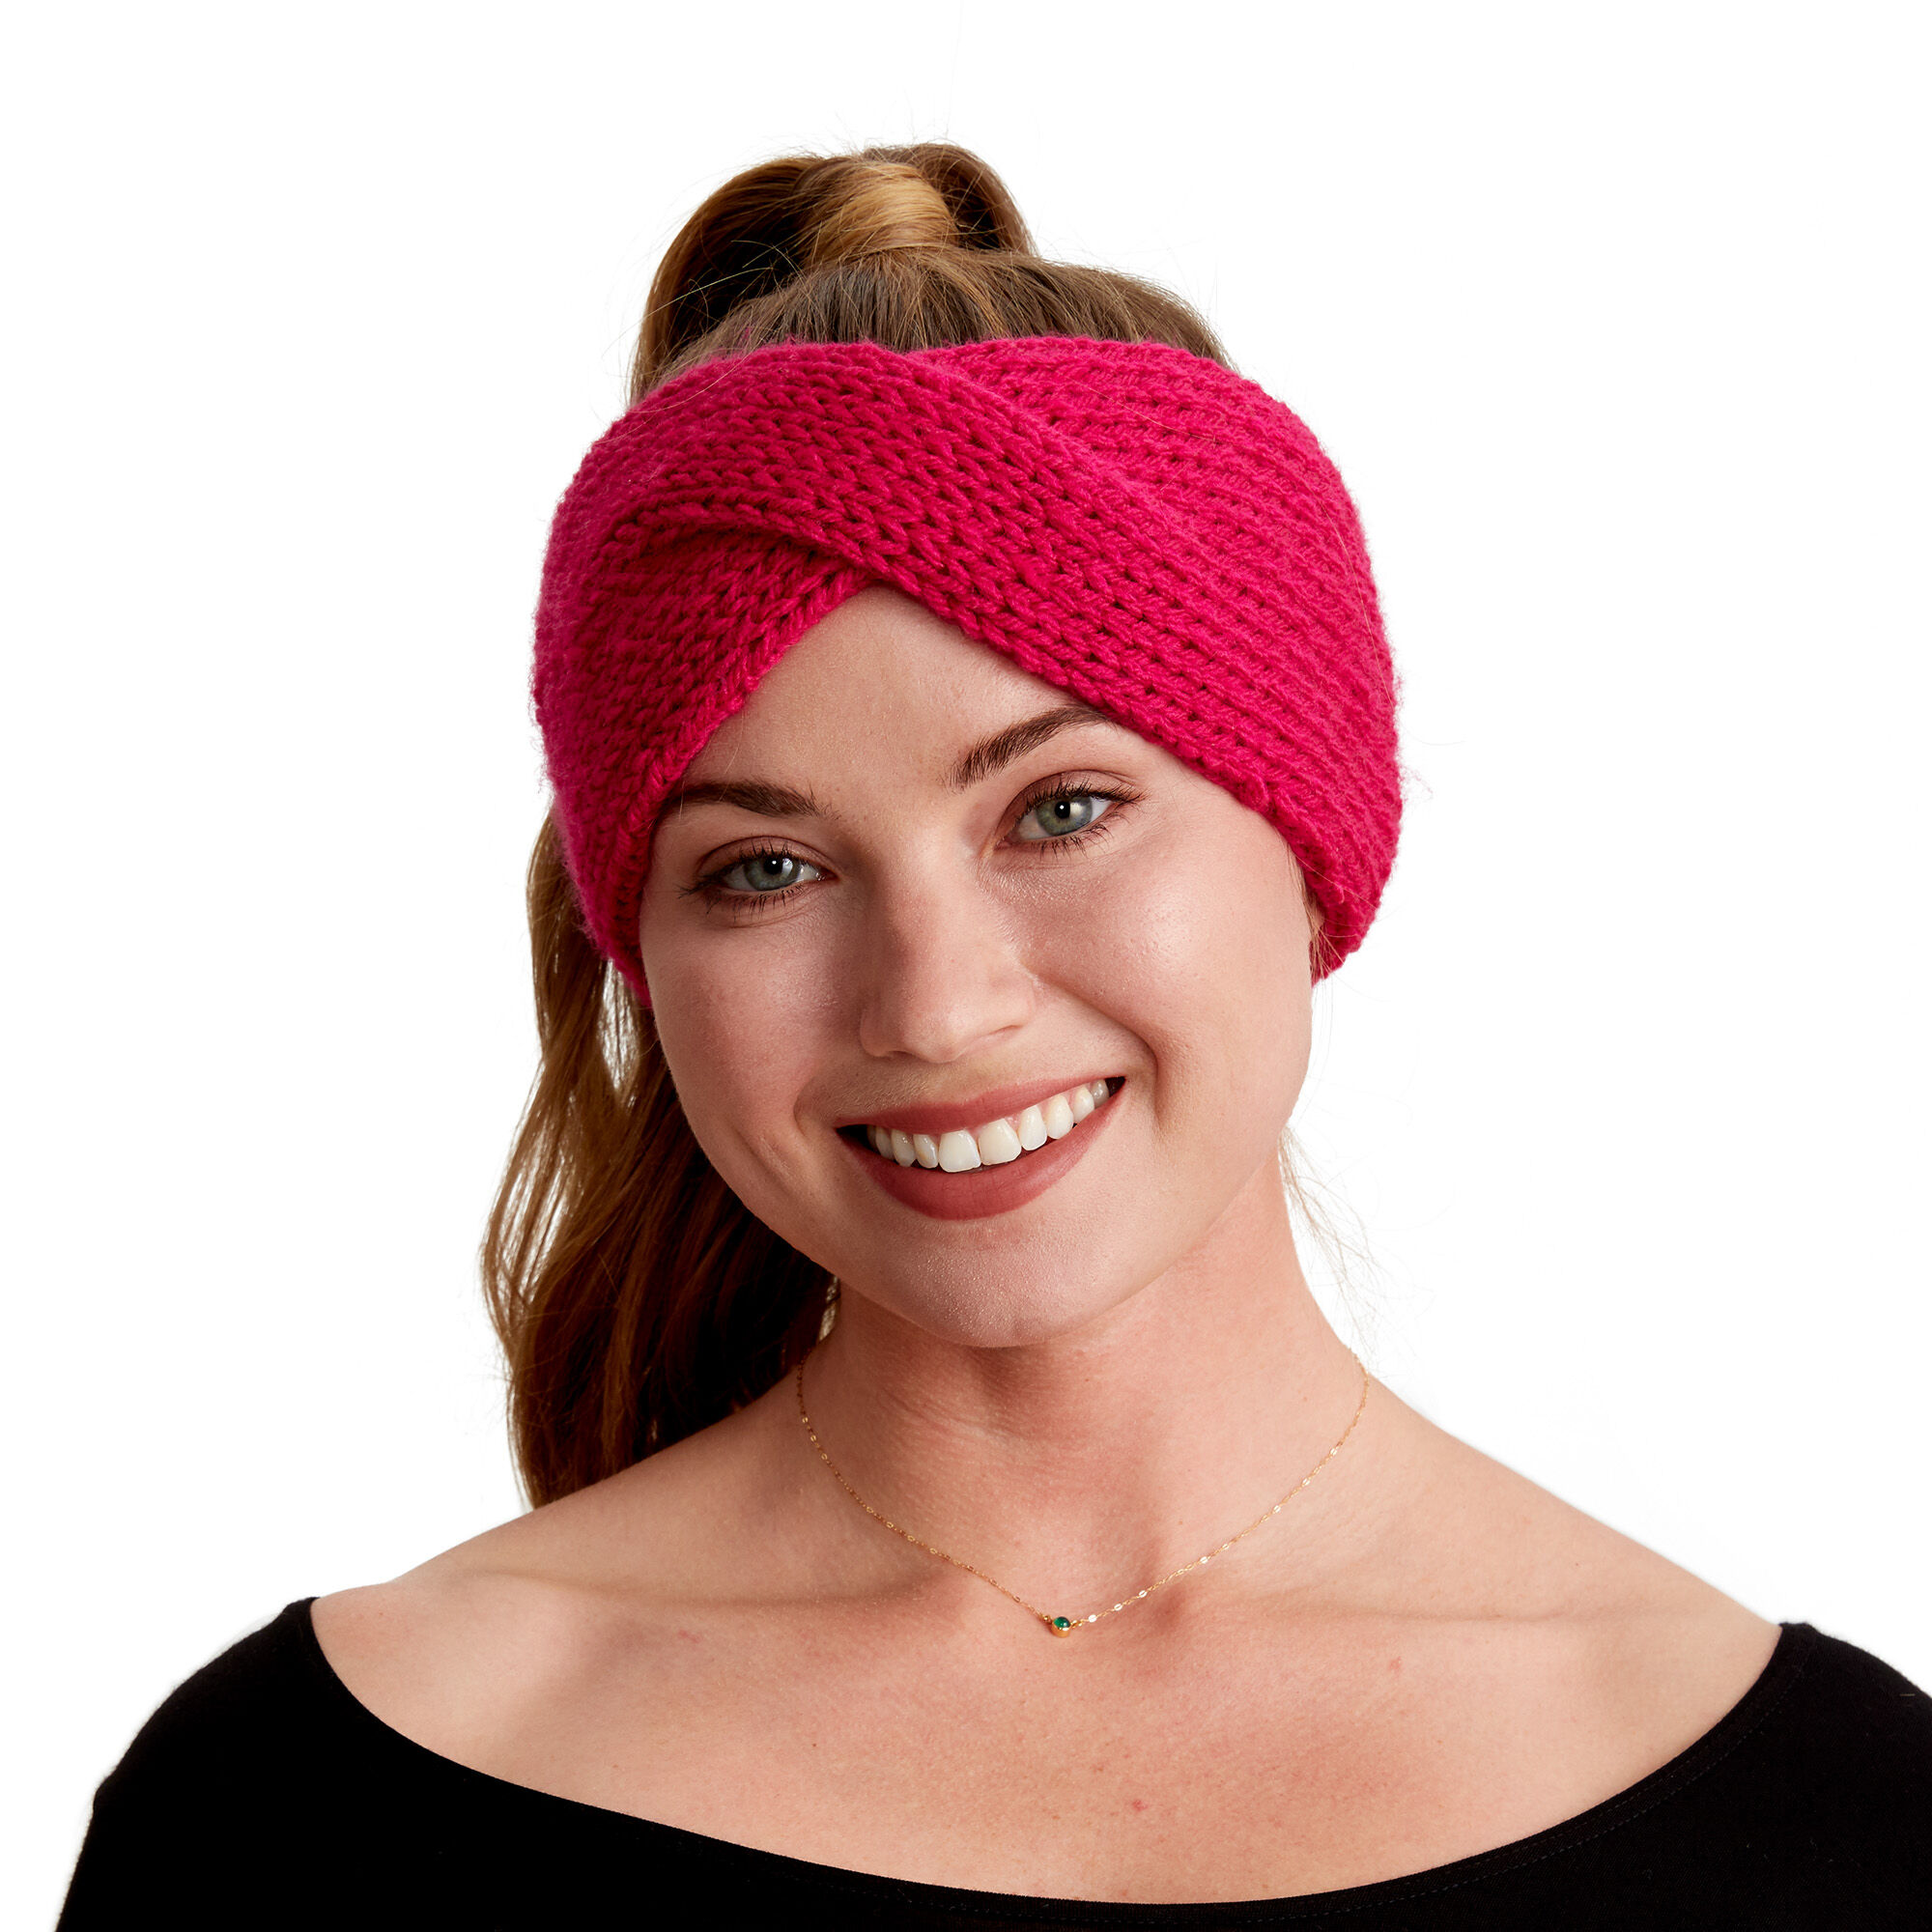 ravelry-trinity-headband-by-lizzy-knits-knit-headband-pattern